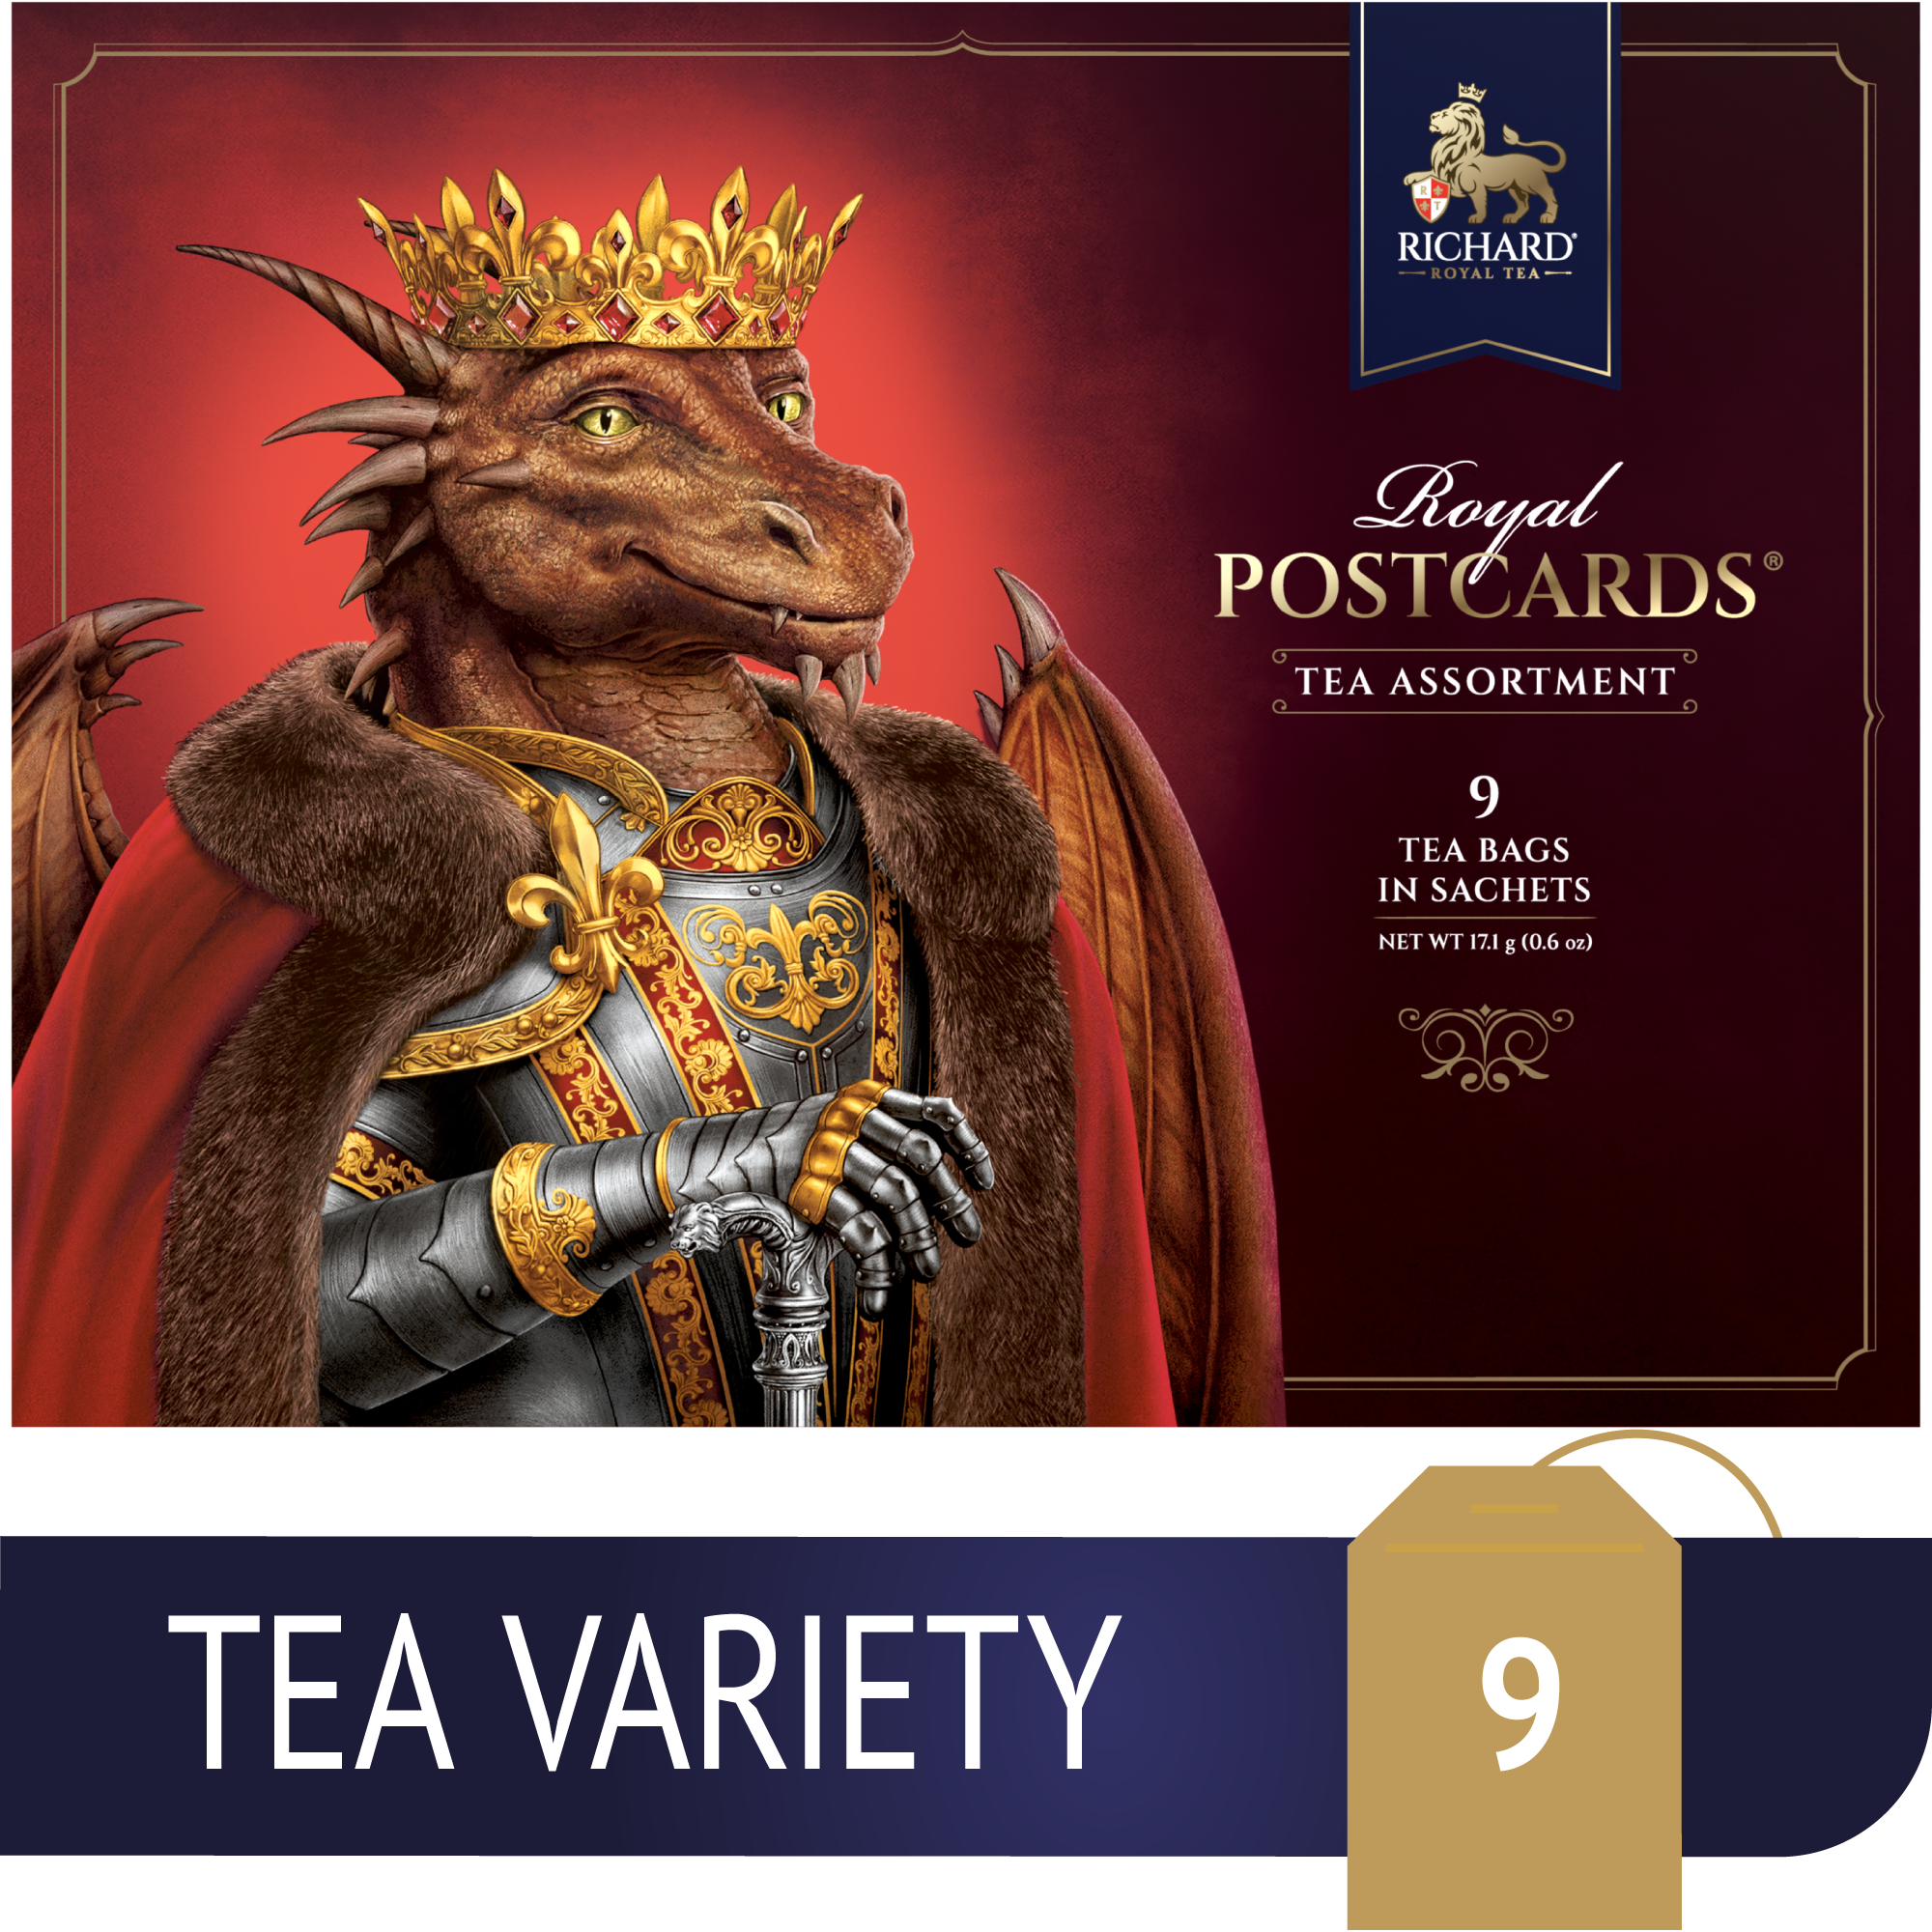 Richard Royal Királyi Képeslap, Sárkány Király, filteres fekete tea-válogatás, 17,1g